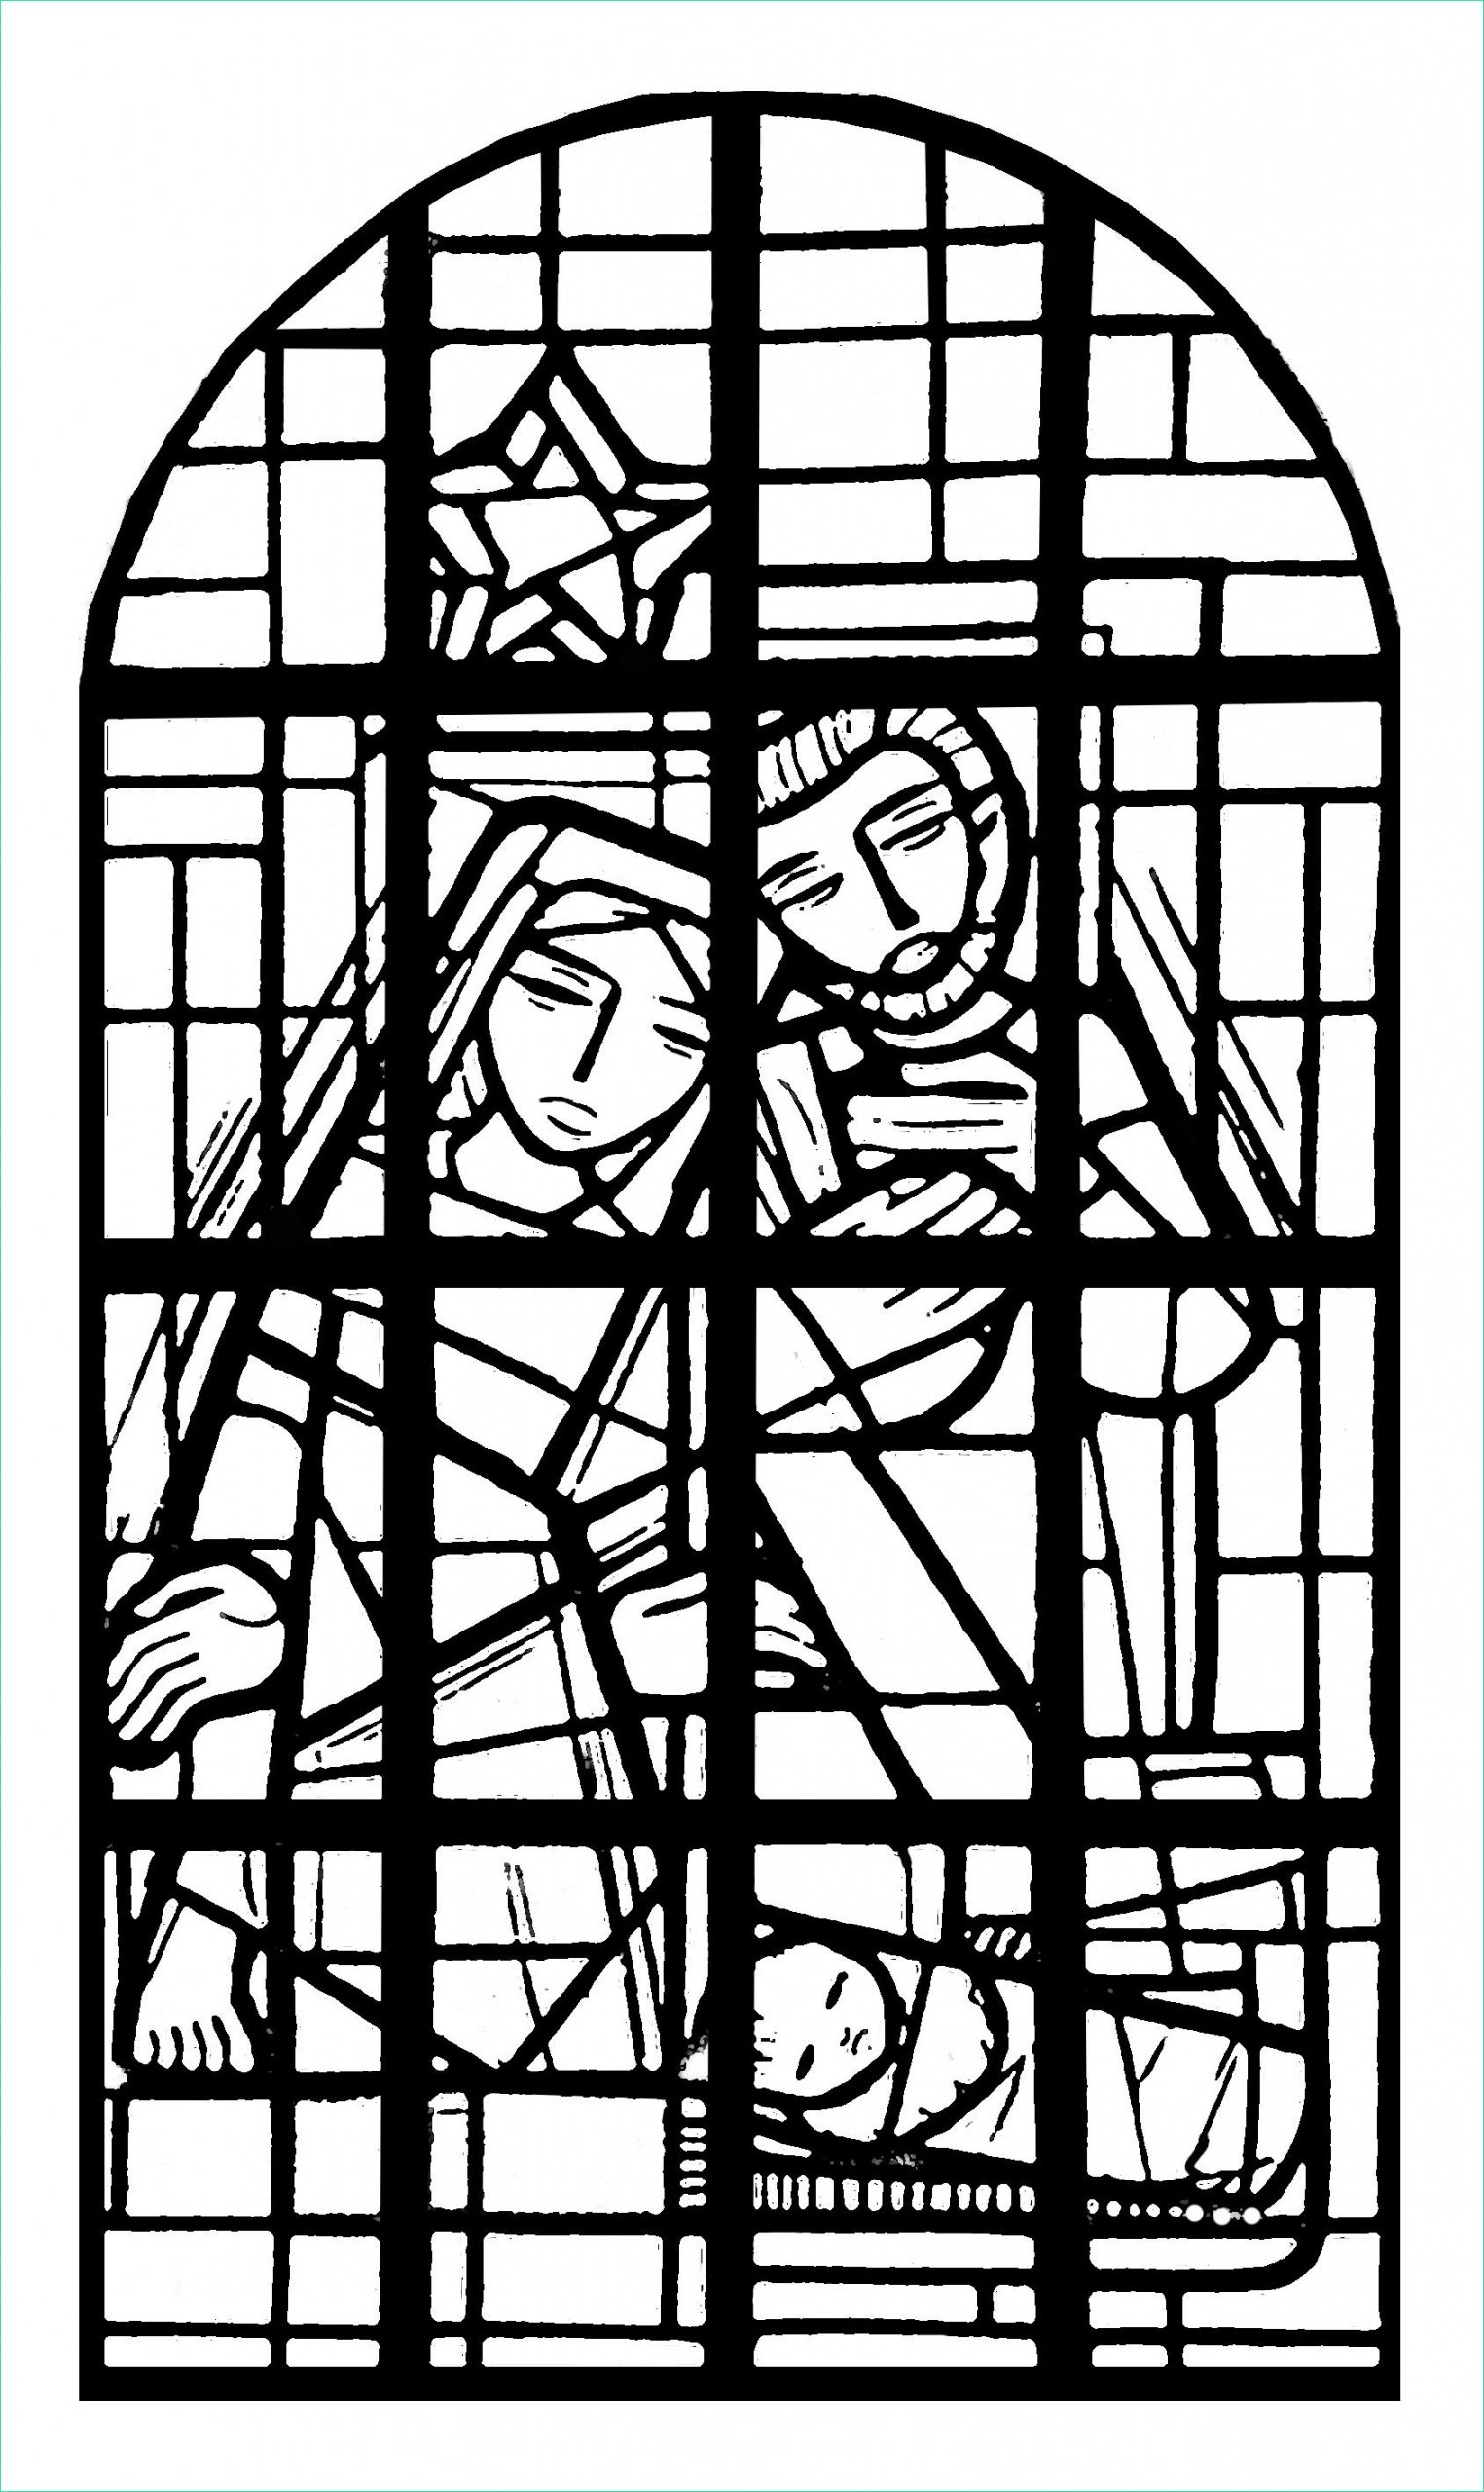 image=vitraux coloriage adulte vitrail de la nef eglise immaculee conception mangombroux verviers france 1